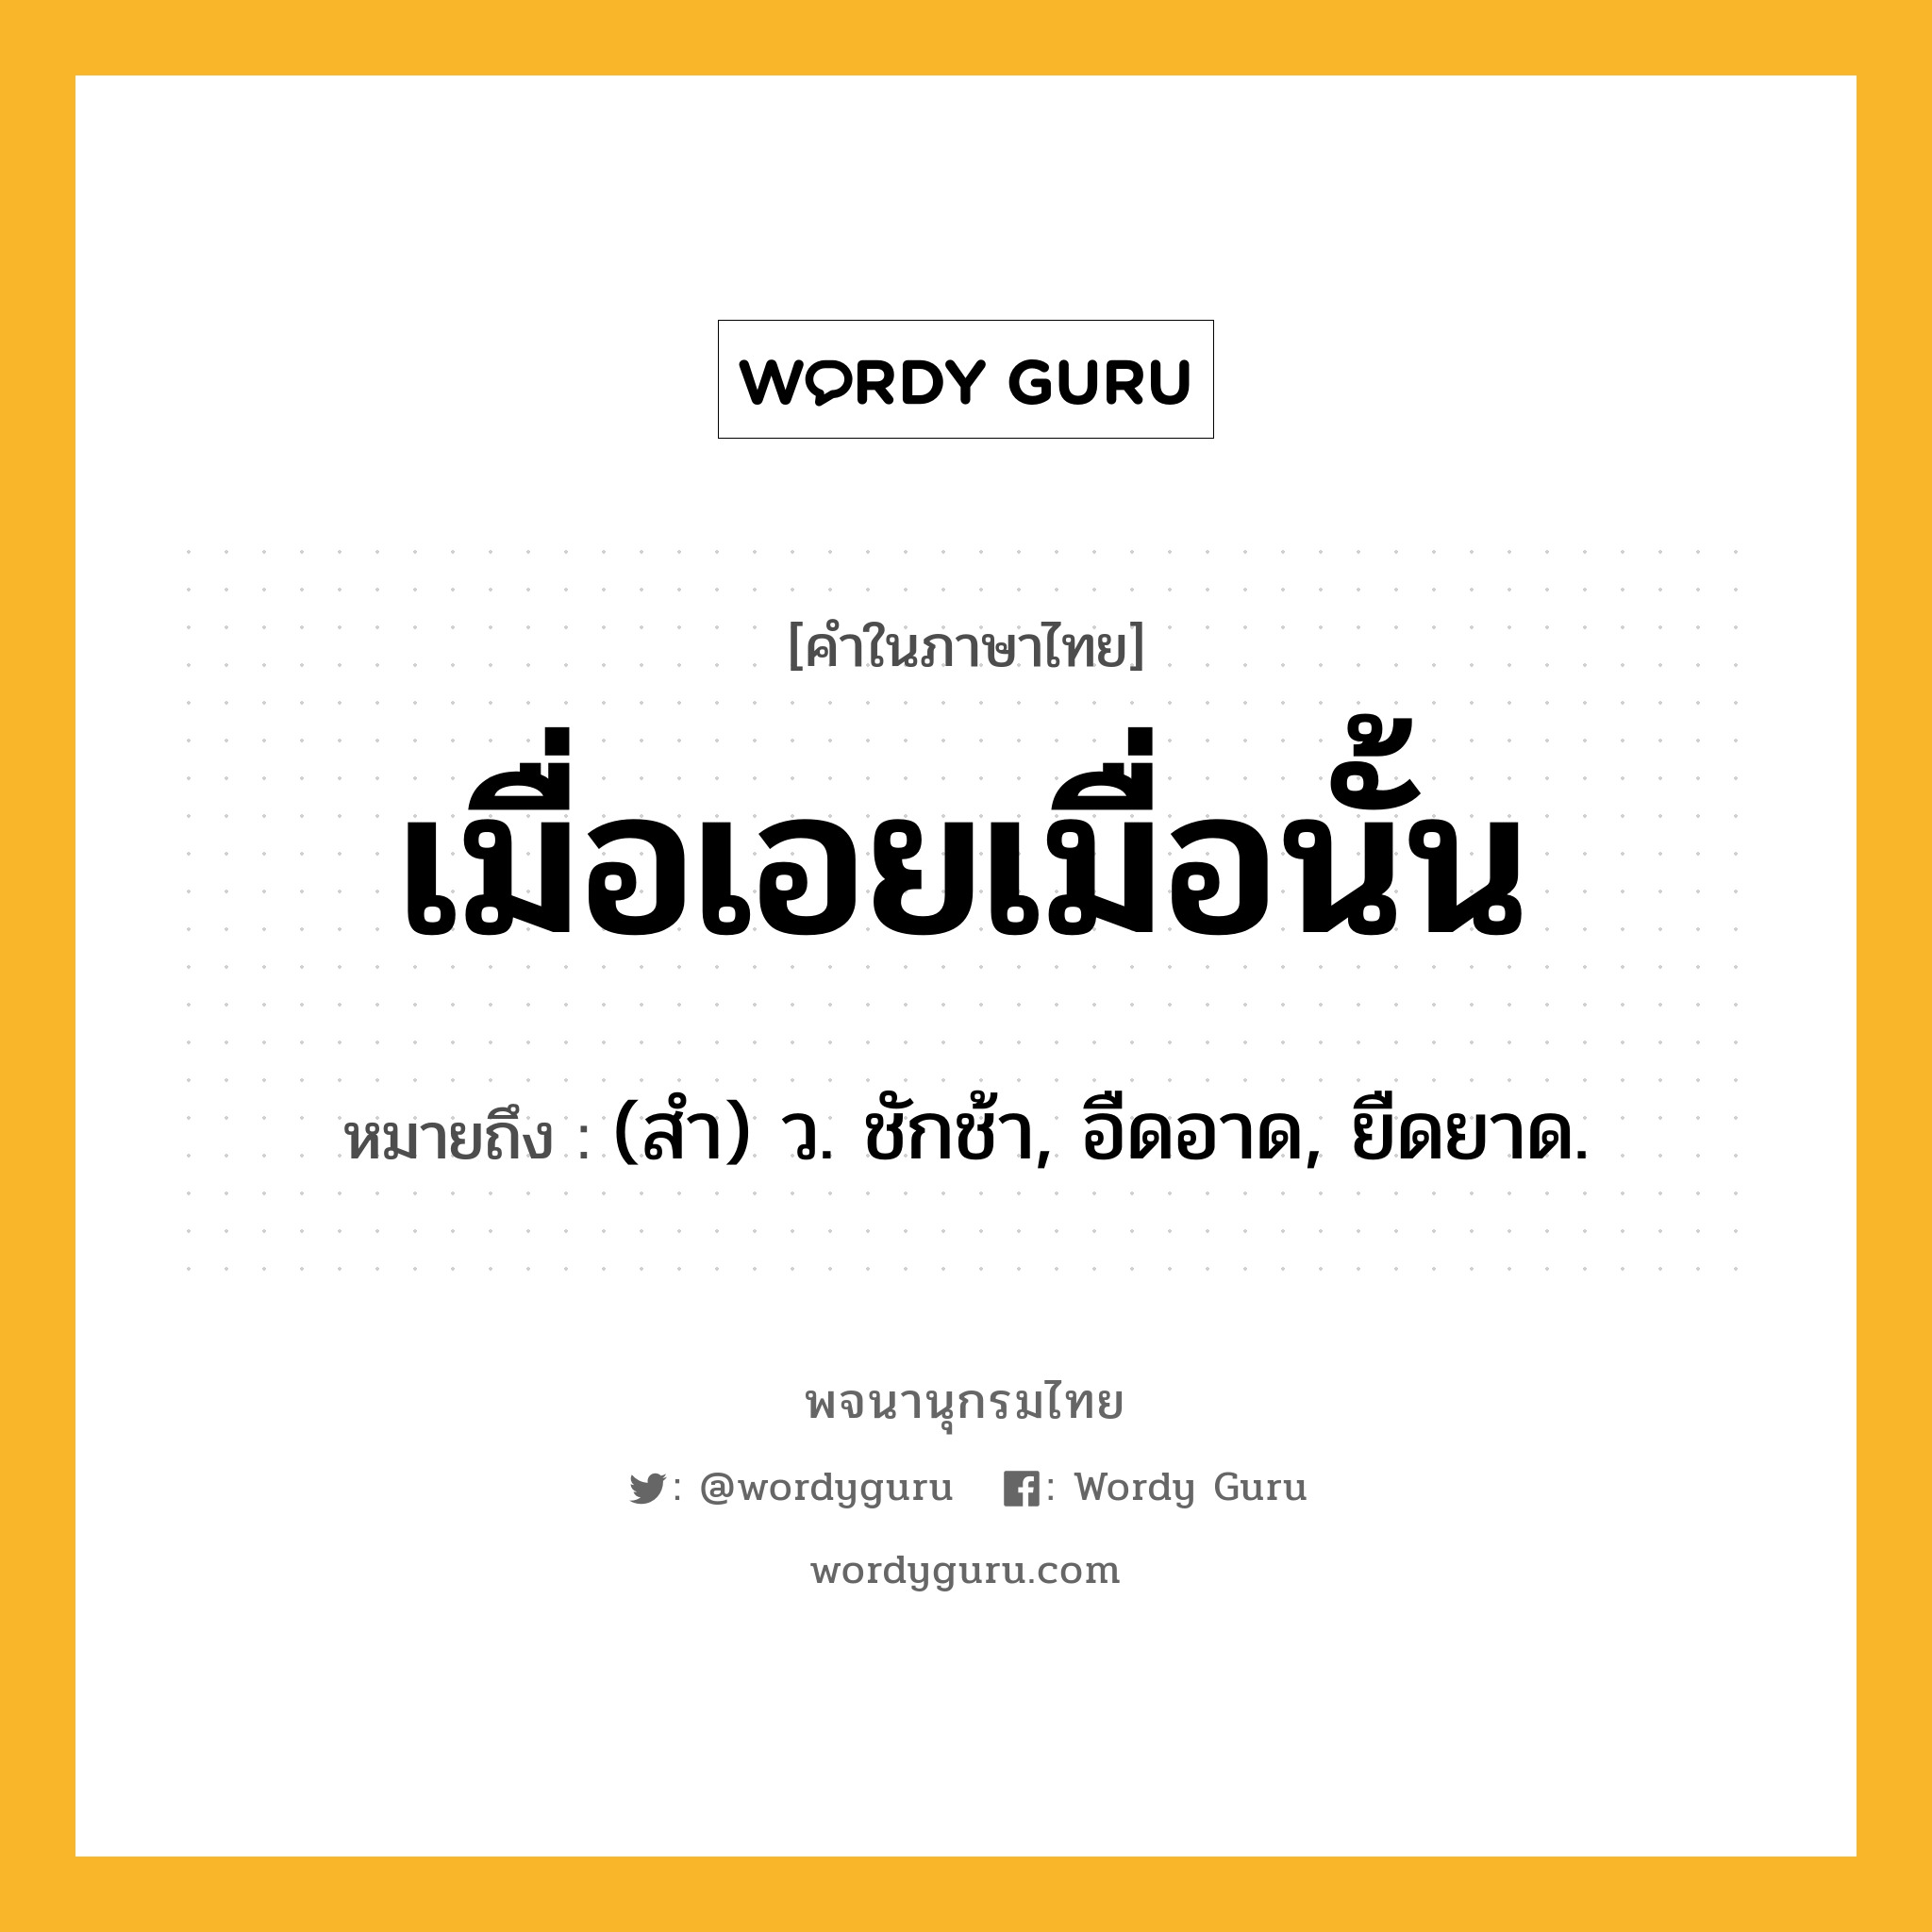 เมื่อเอยเมื่อนั้น ความหมาย หมายถึงอะไร?, คำในภาษาไทย เมื่อเอยเมื่อนั้น หมายถึง (สํา) ว. ชักช้า, อืดอาด, ยืดยาด.